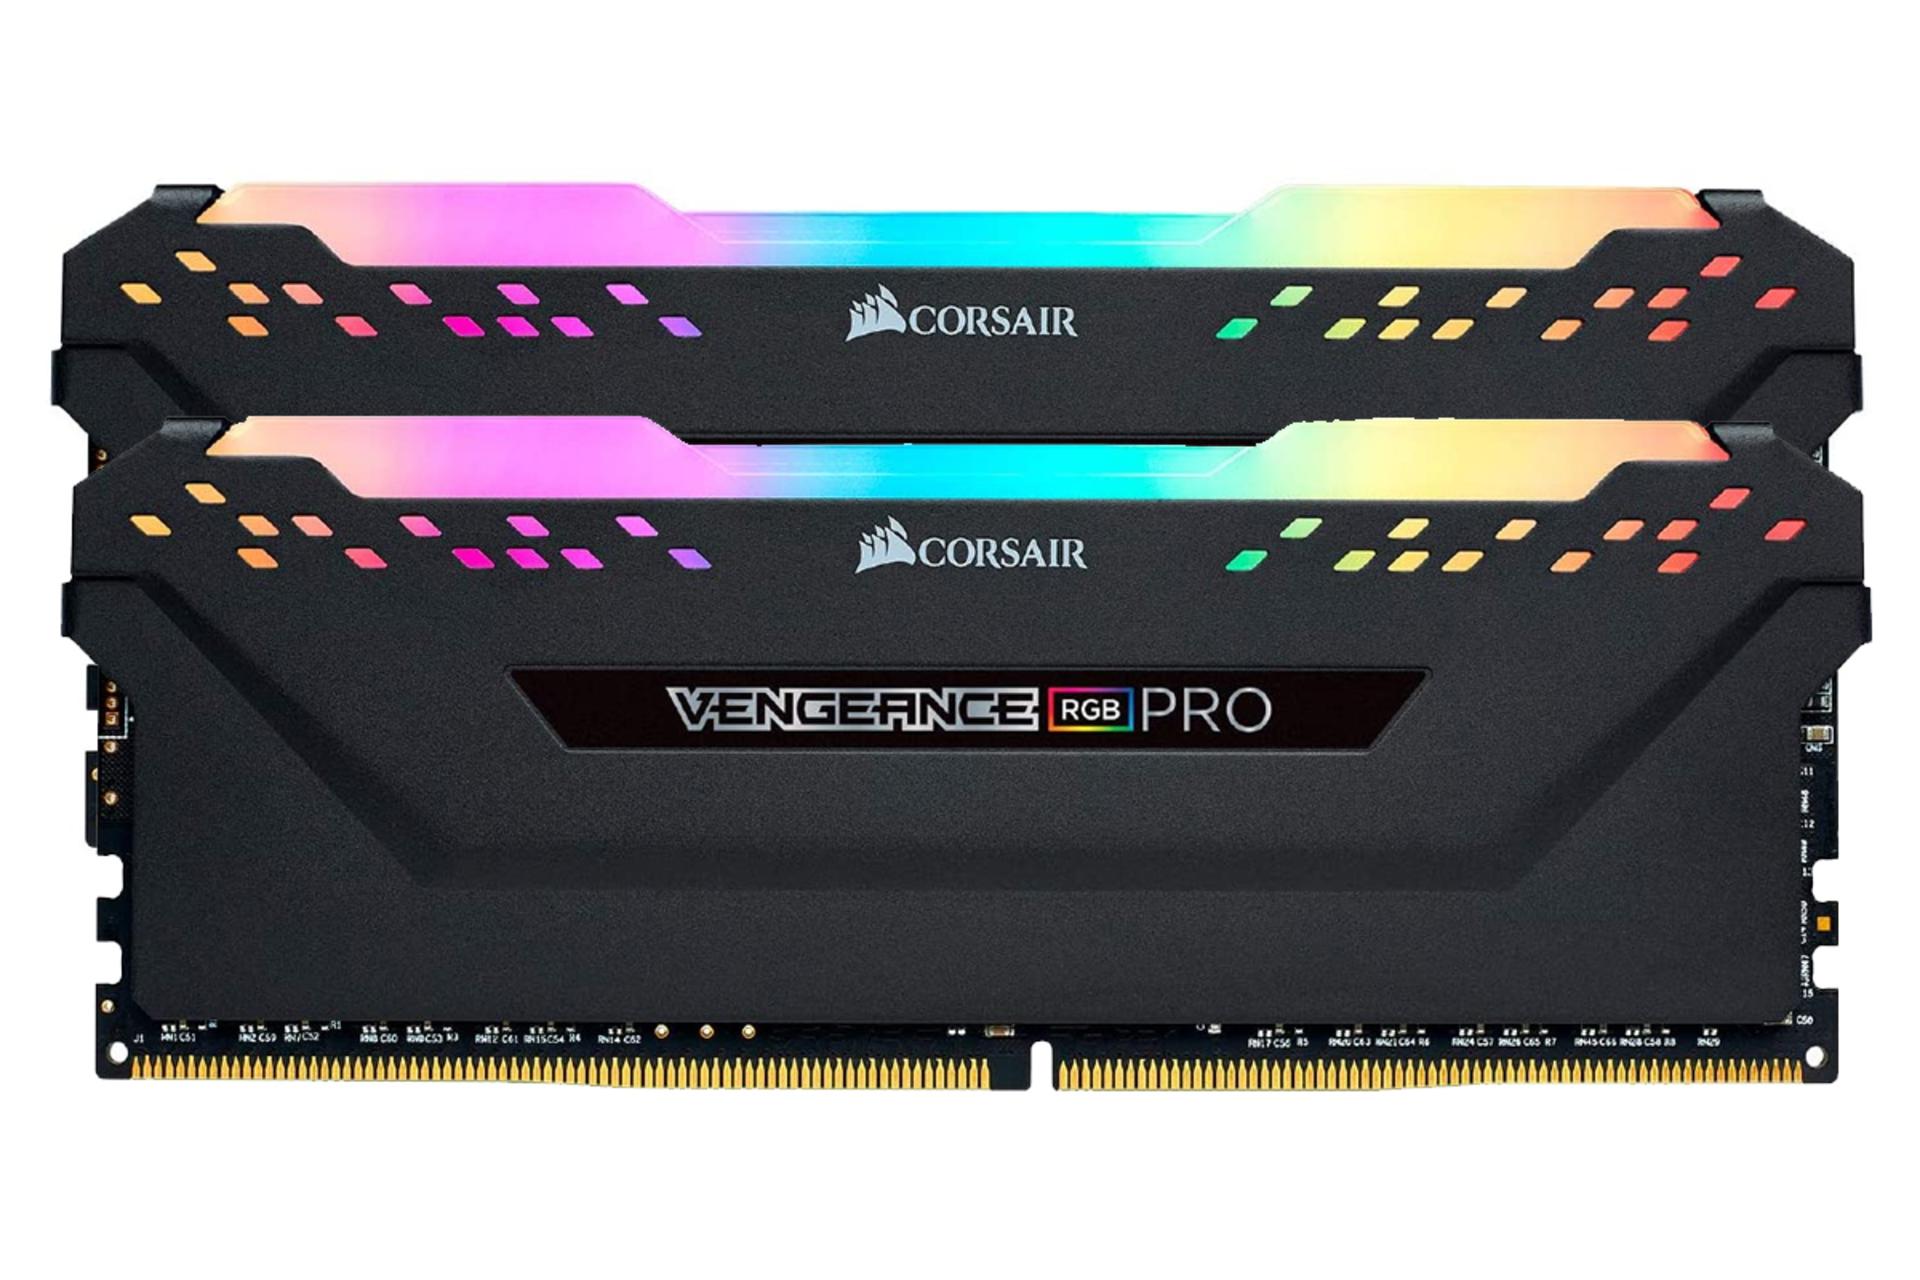 رم کورسیر VENGEANCE RGB PRO ظرفیت 64 گیگابایت (2x32) از نوع DDR4-4000